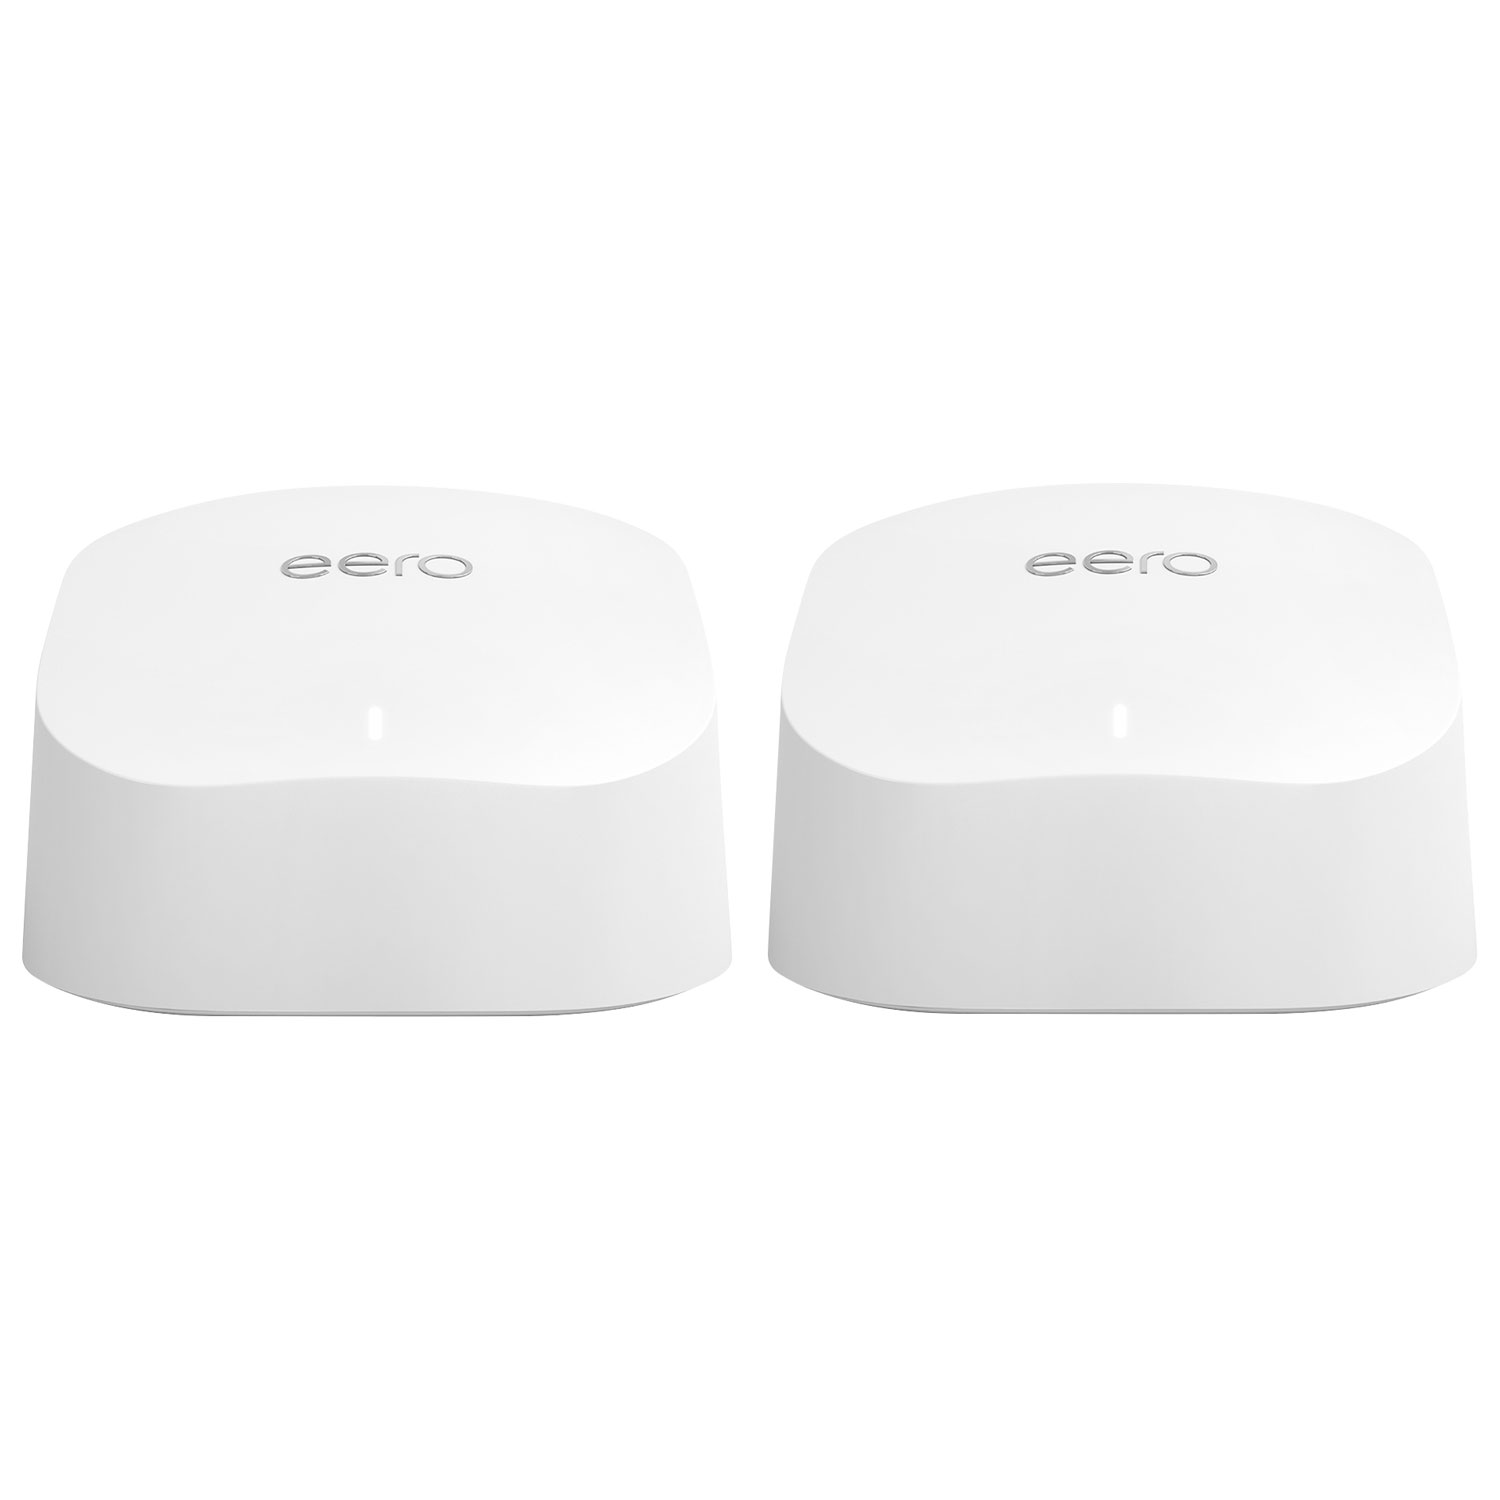 Eero 6 Whole Home Mesh Wi-Fi 6 System (B086PFYLFY) - 2 Pack